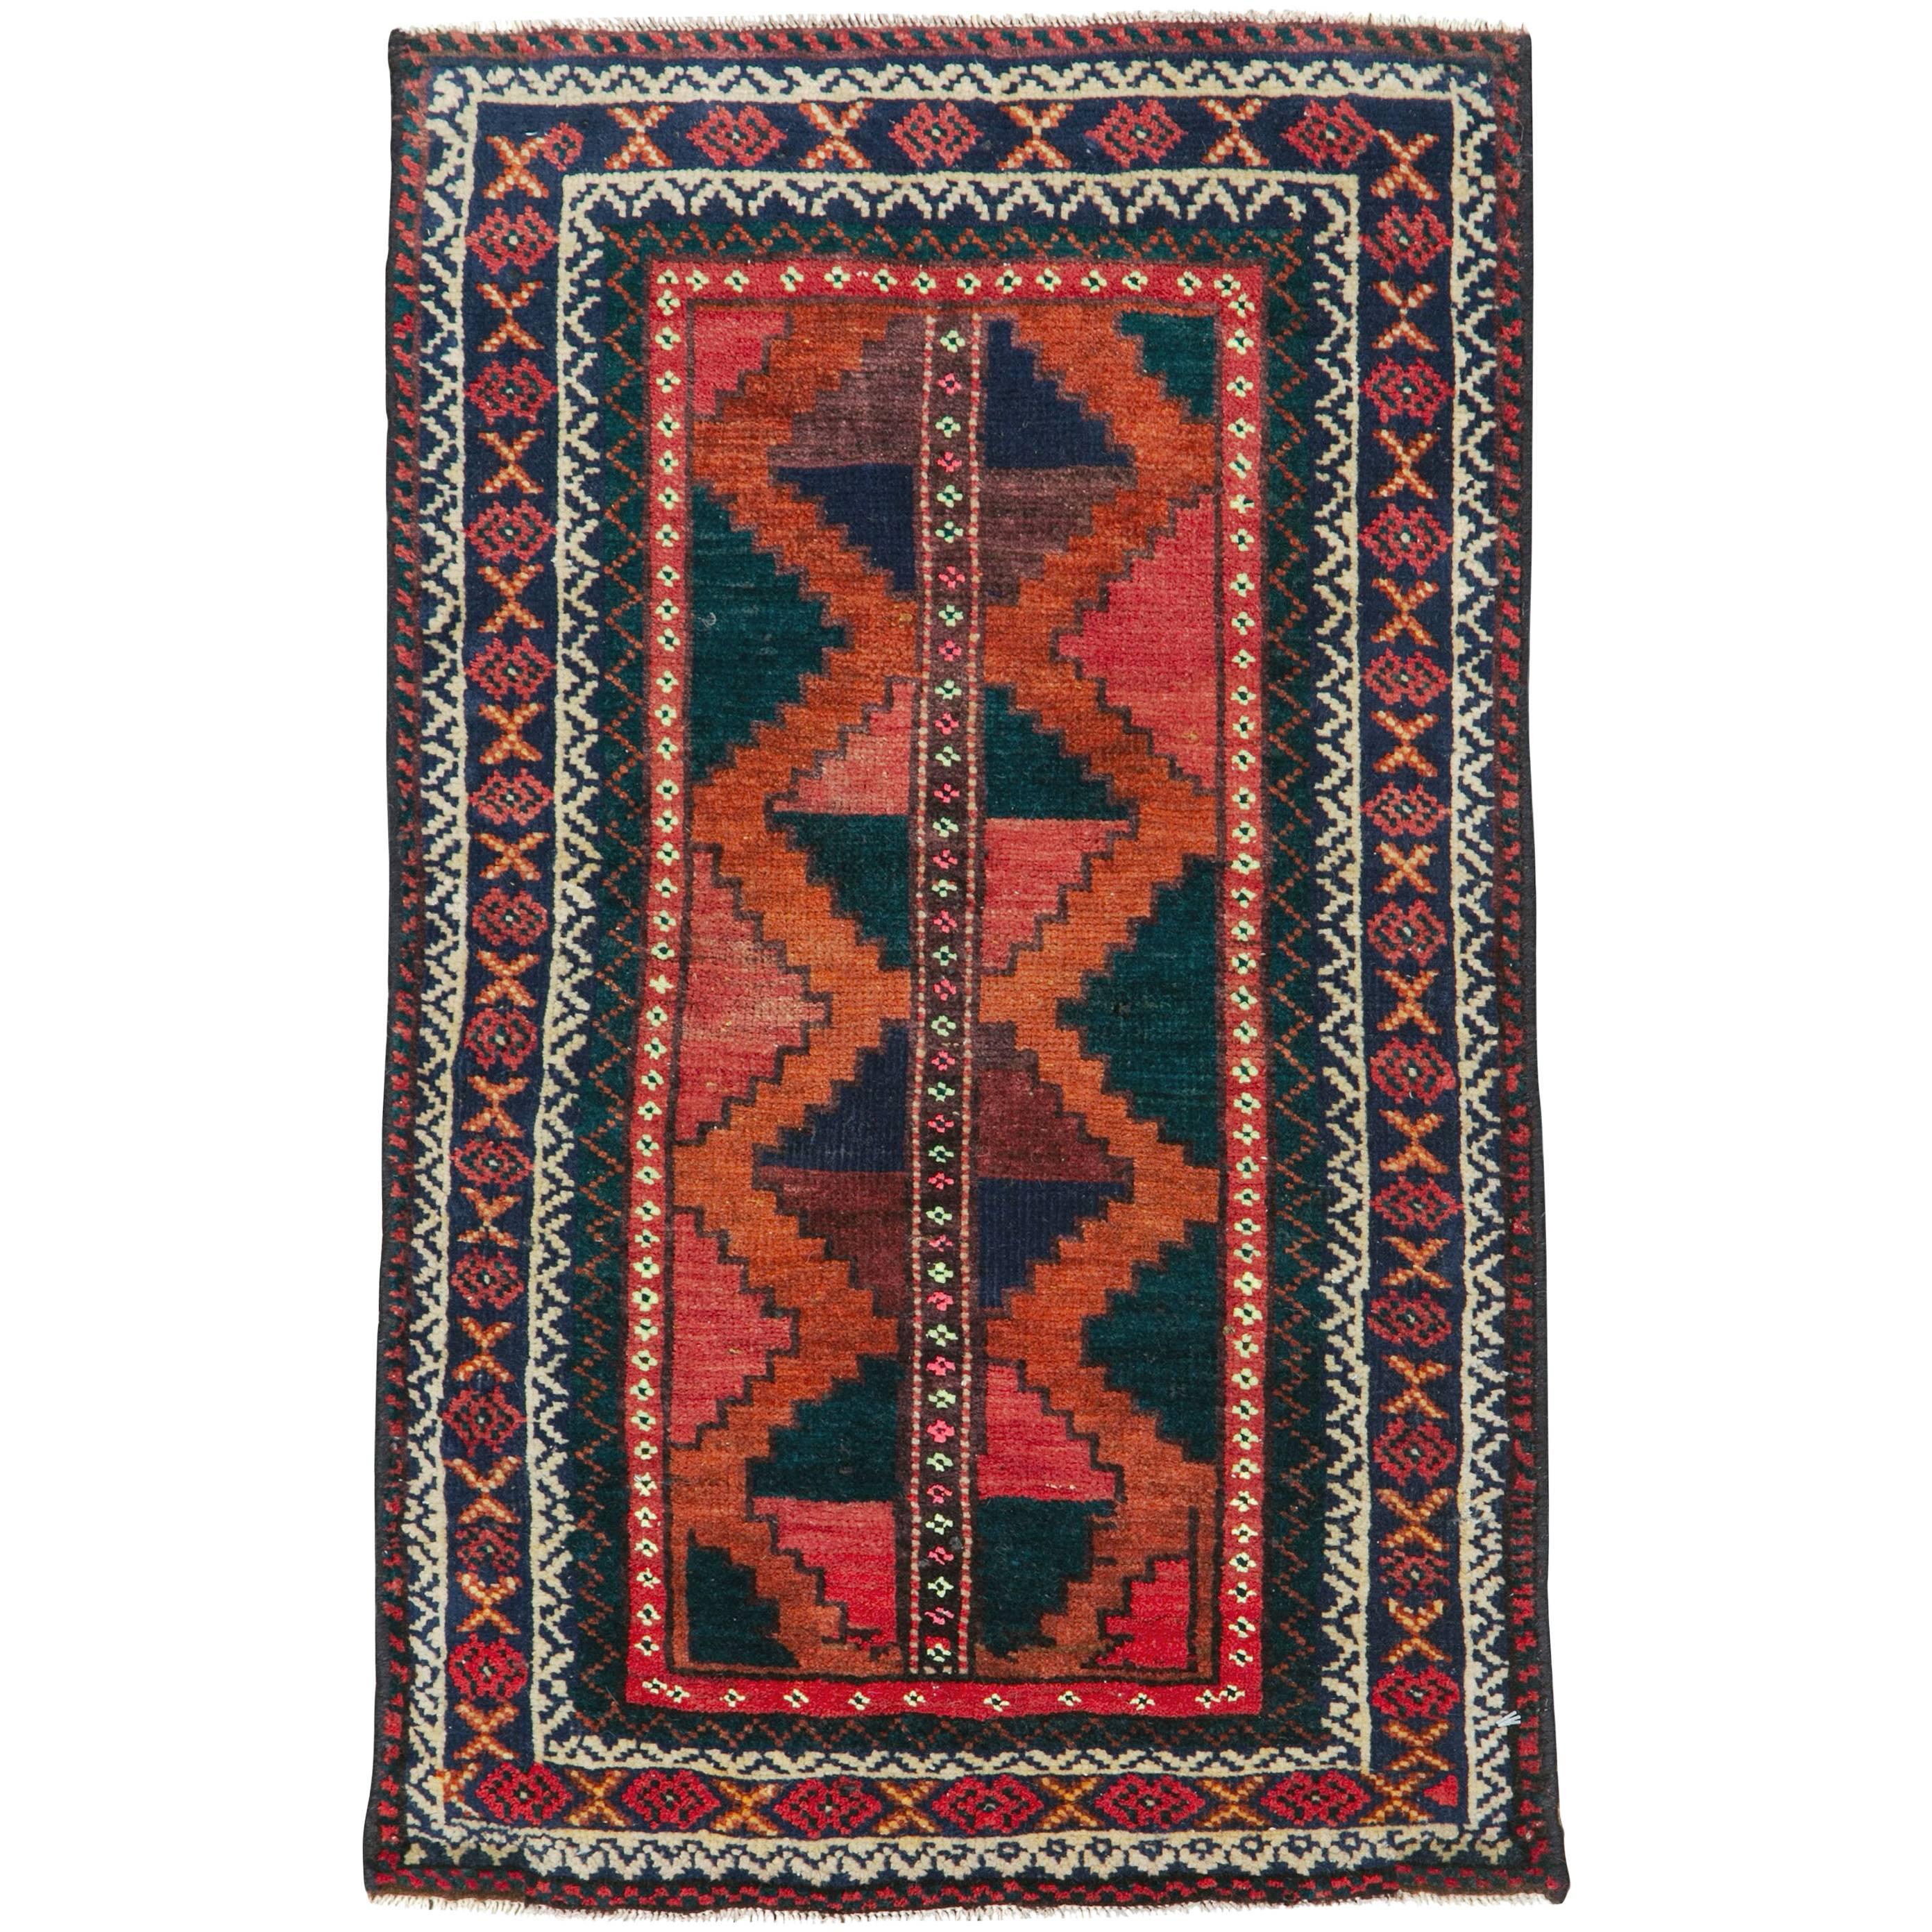 How do I identify a Turkish rug?